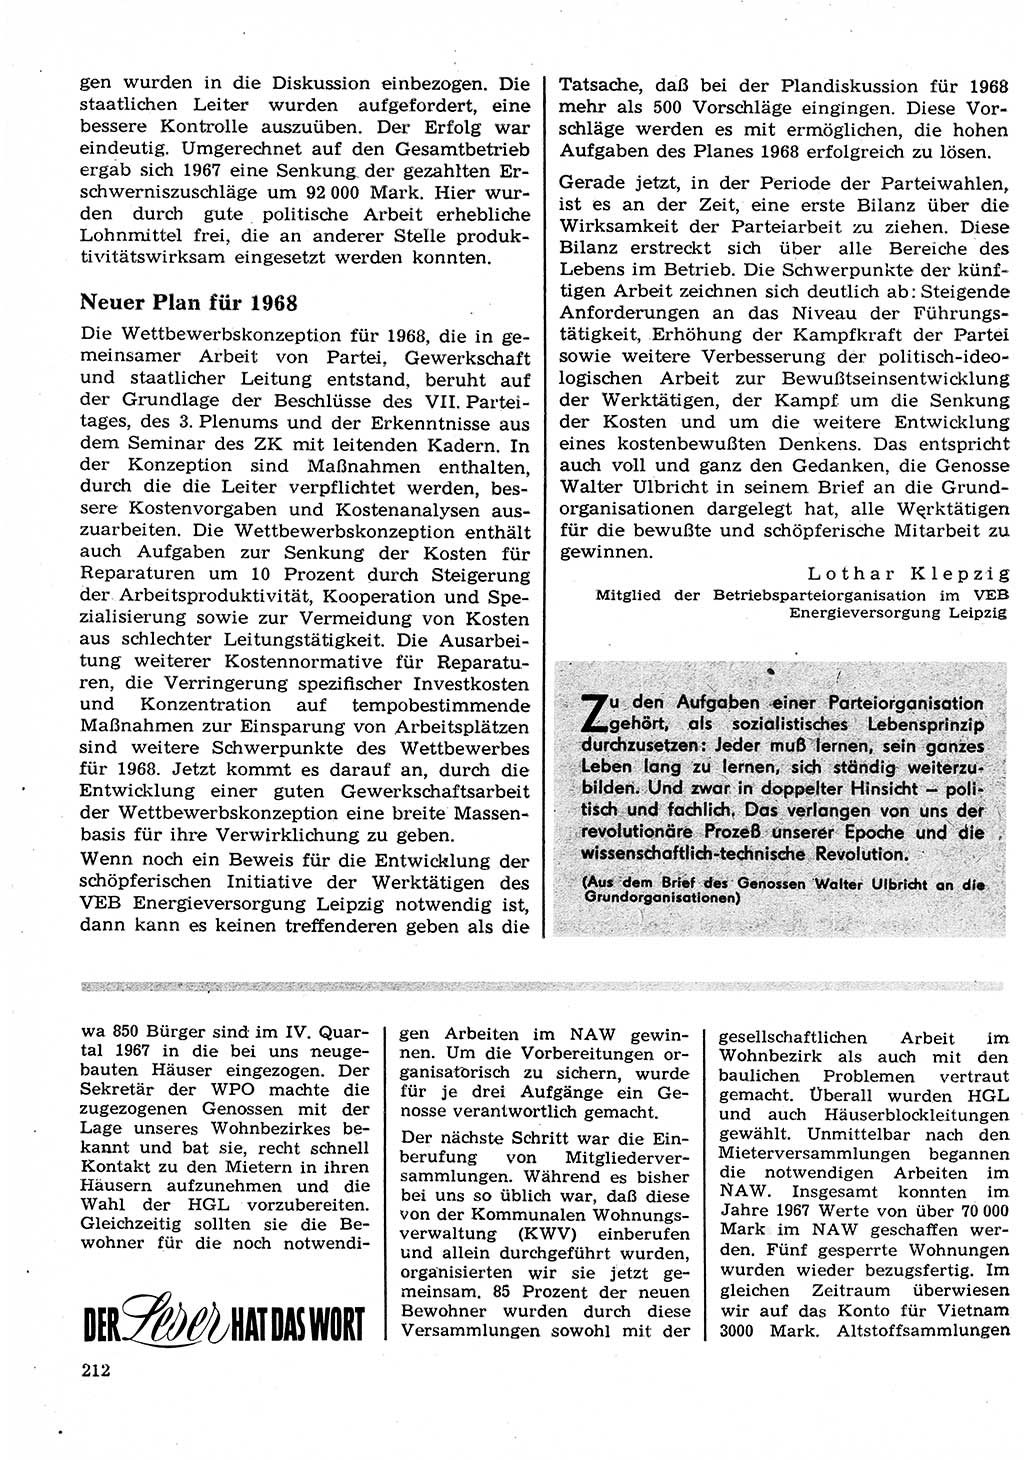 Neuer Weg (NW), Organ des Zentralkomitees (ZK) der SED (Sozialistische Einheitspartei Deutschlands) für Fragen des Parteilebens, 23. Jahrgang [Deutsche Demokratische Republik (DDR)] 1968, Seite 212 (NW ZK SED DDR 1968, S. 212)